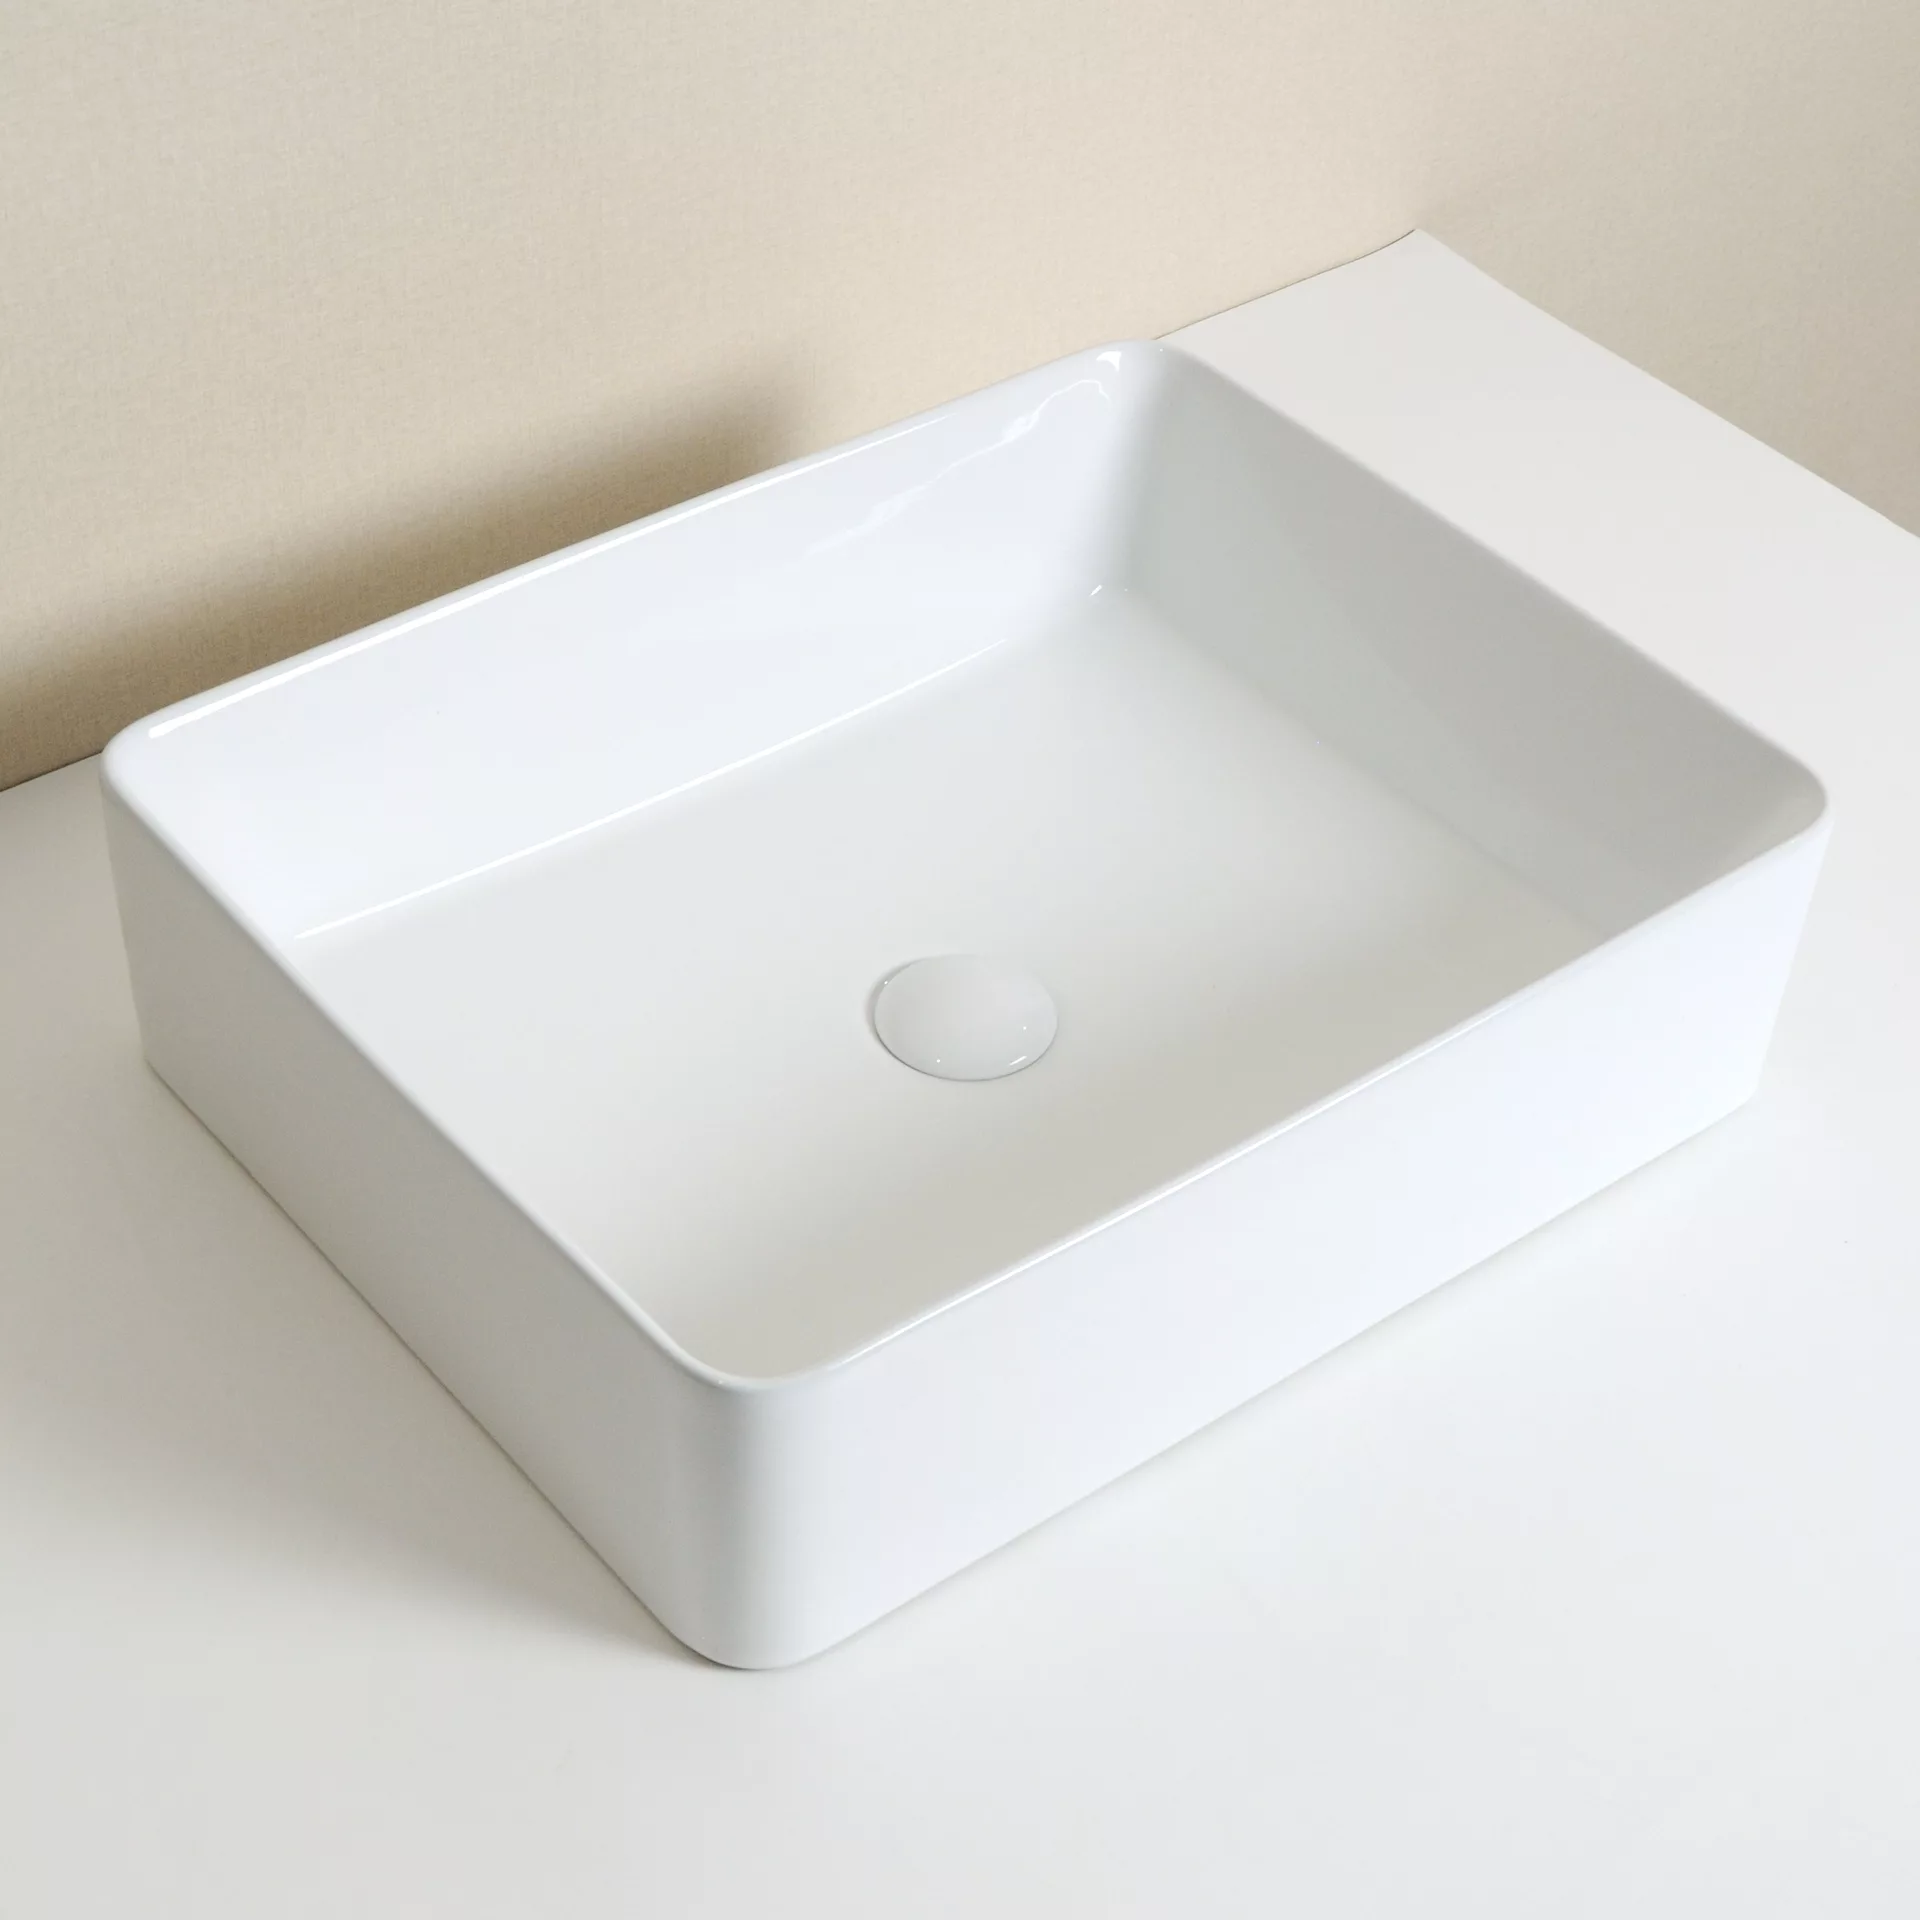 Накладная раковина для ванной GiD N9104 белая прямоугольная керамическая